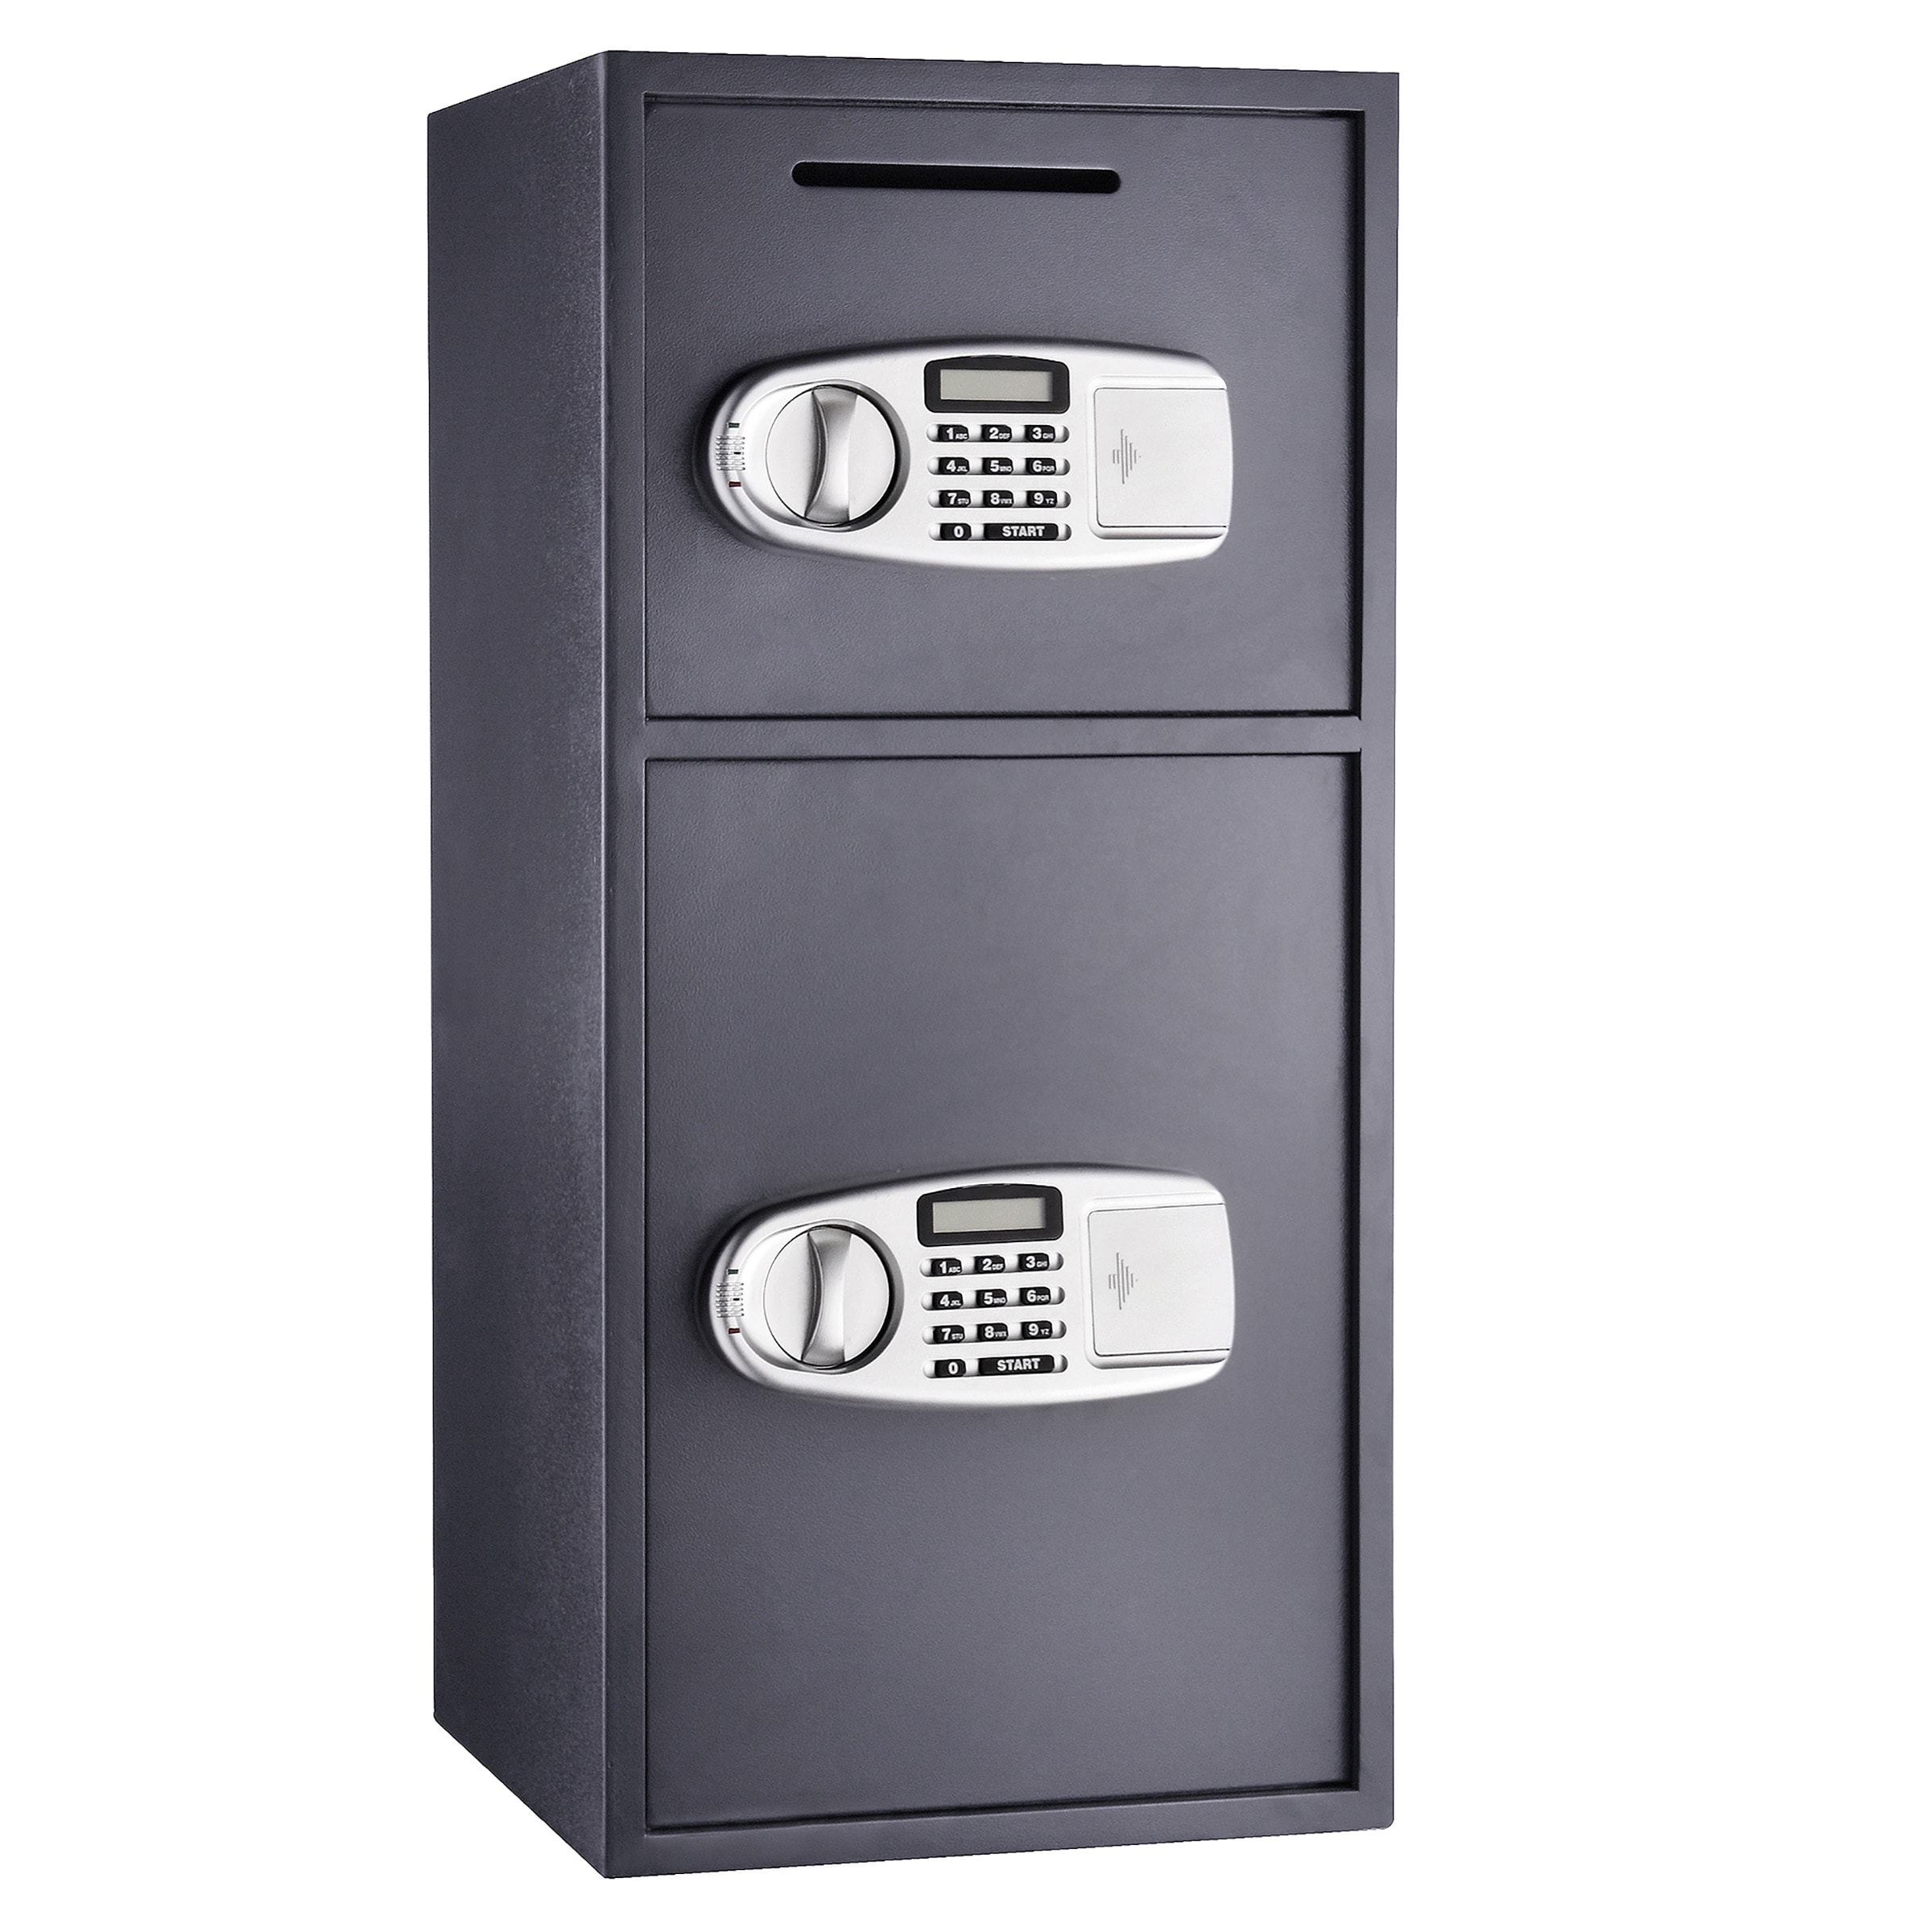 Safe Deposit Box with 2 Keypads and 2 Manual Keys | - Stalwart 83-DT5930